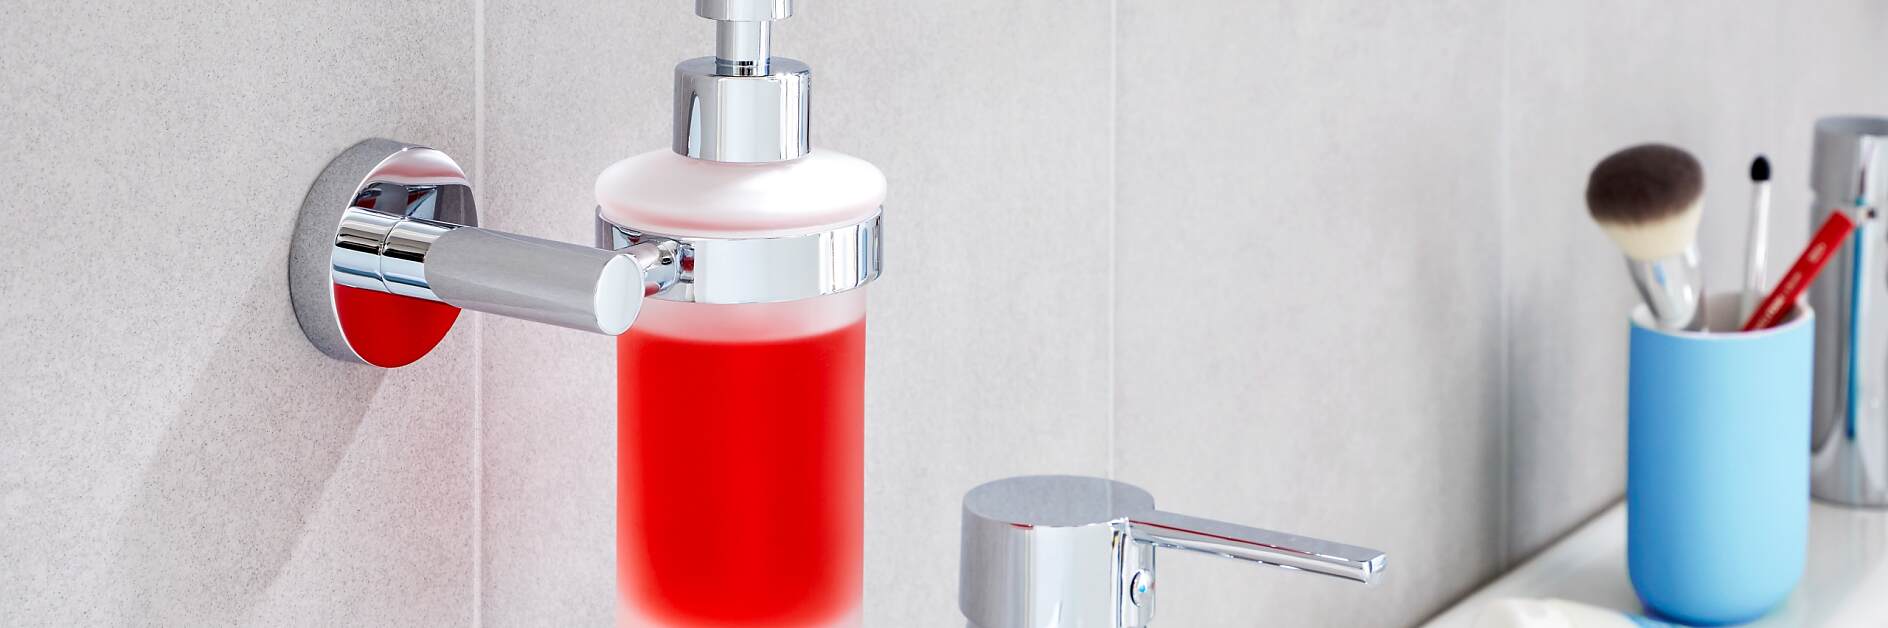 Les accessoires High-tech indispensables pour la salle de bain les- accessoires-high-tech-pour-la-salle-de-bain-n400